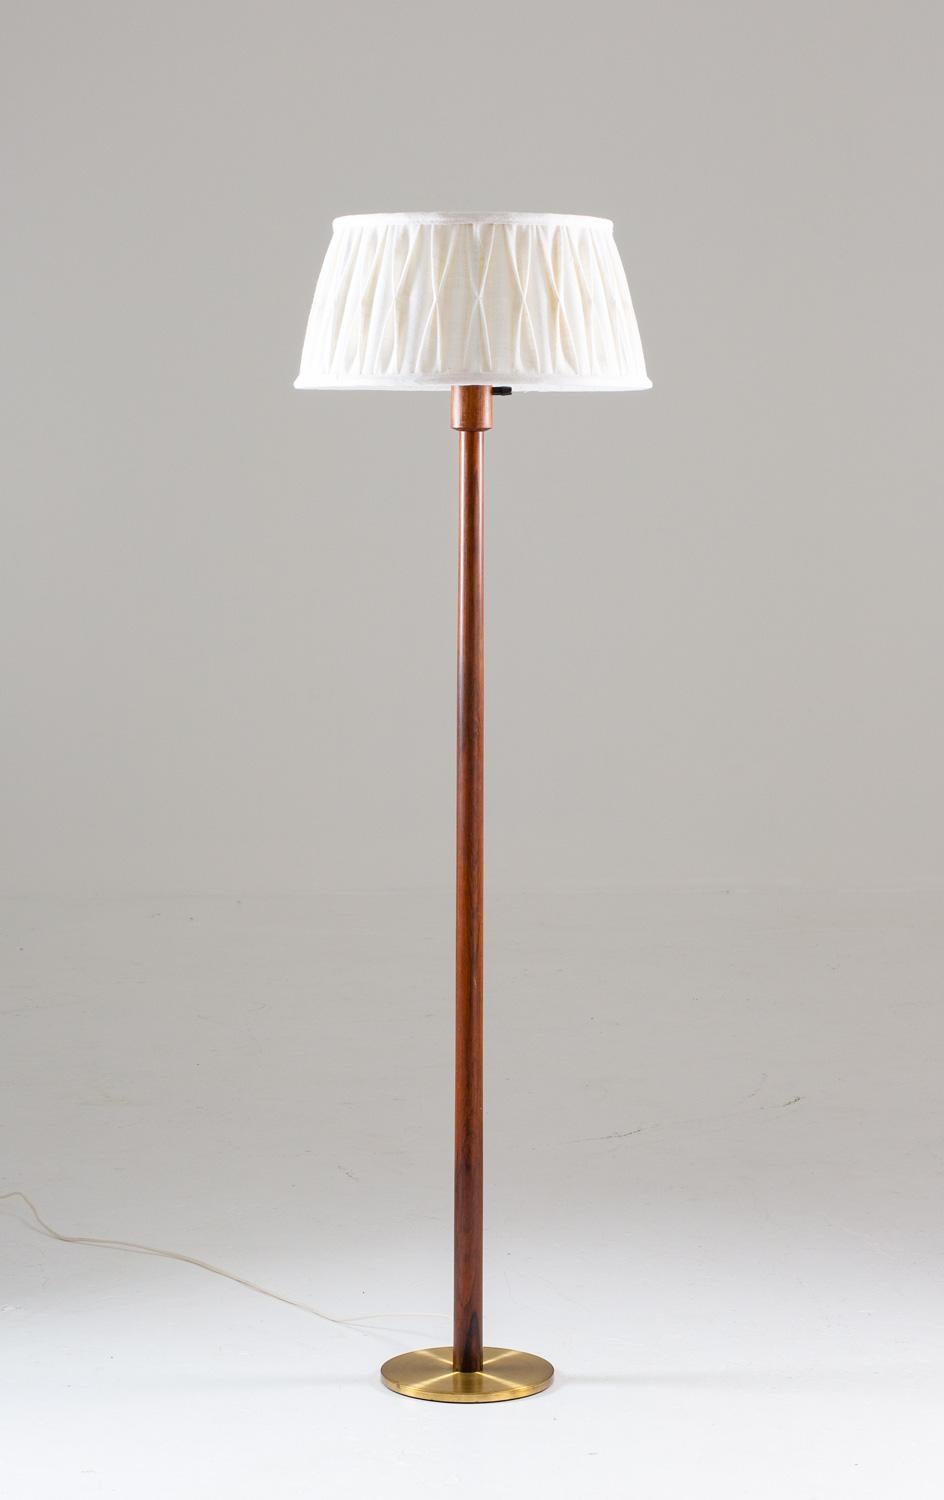 uno floor lamp